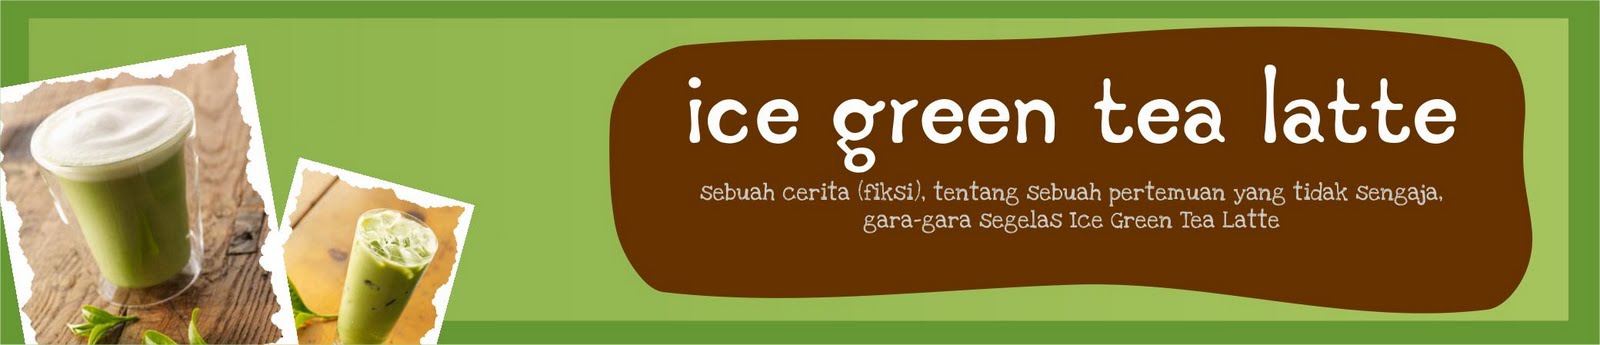 Ice Green Tea Latte